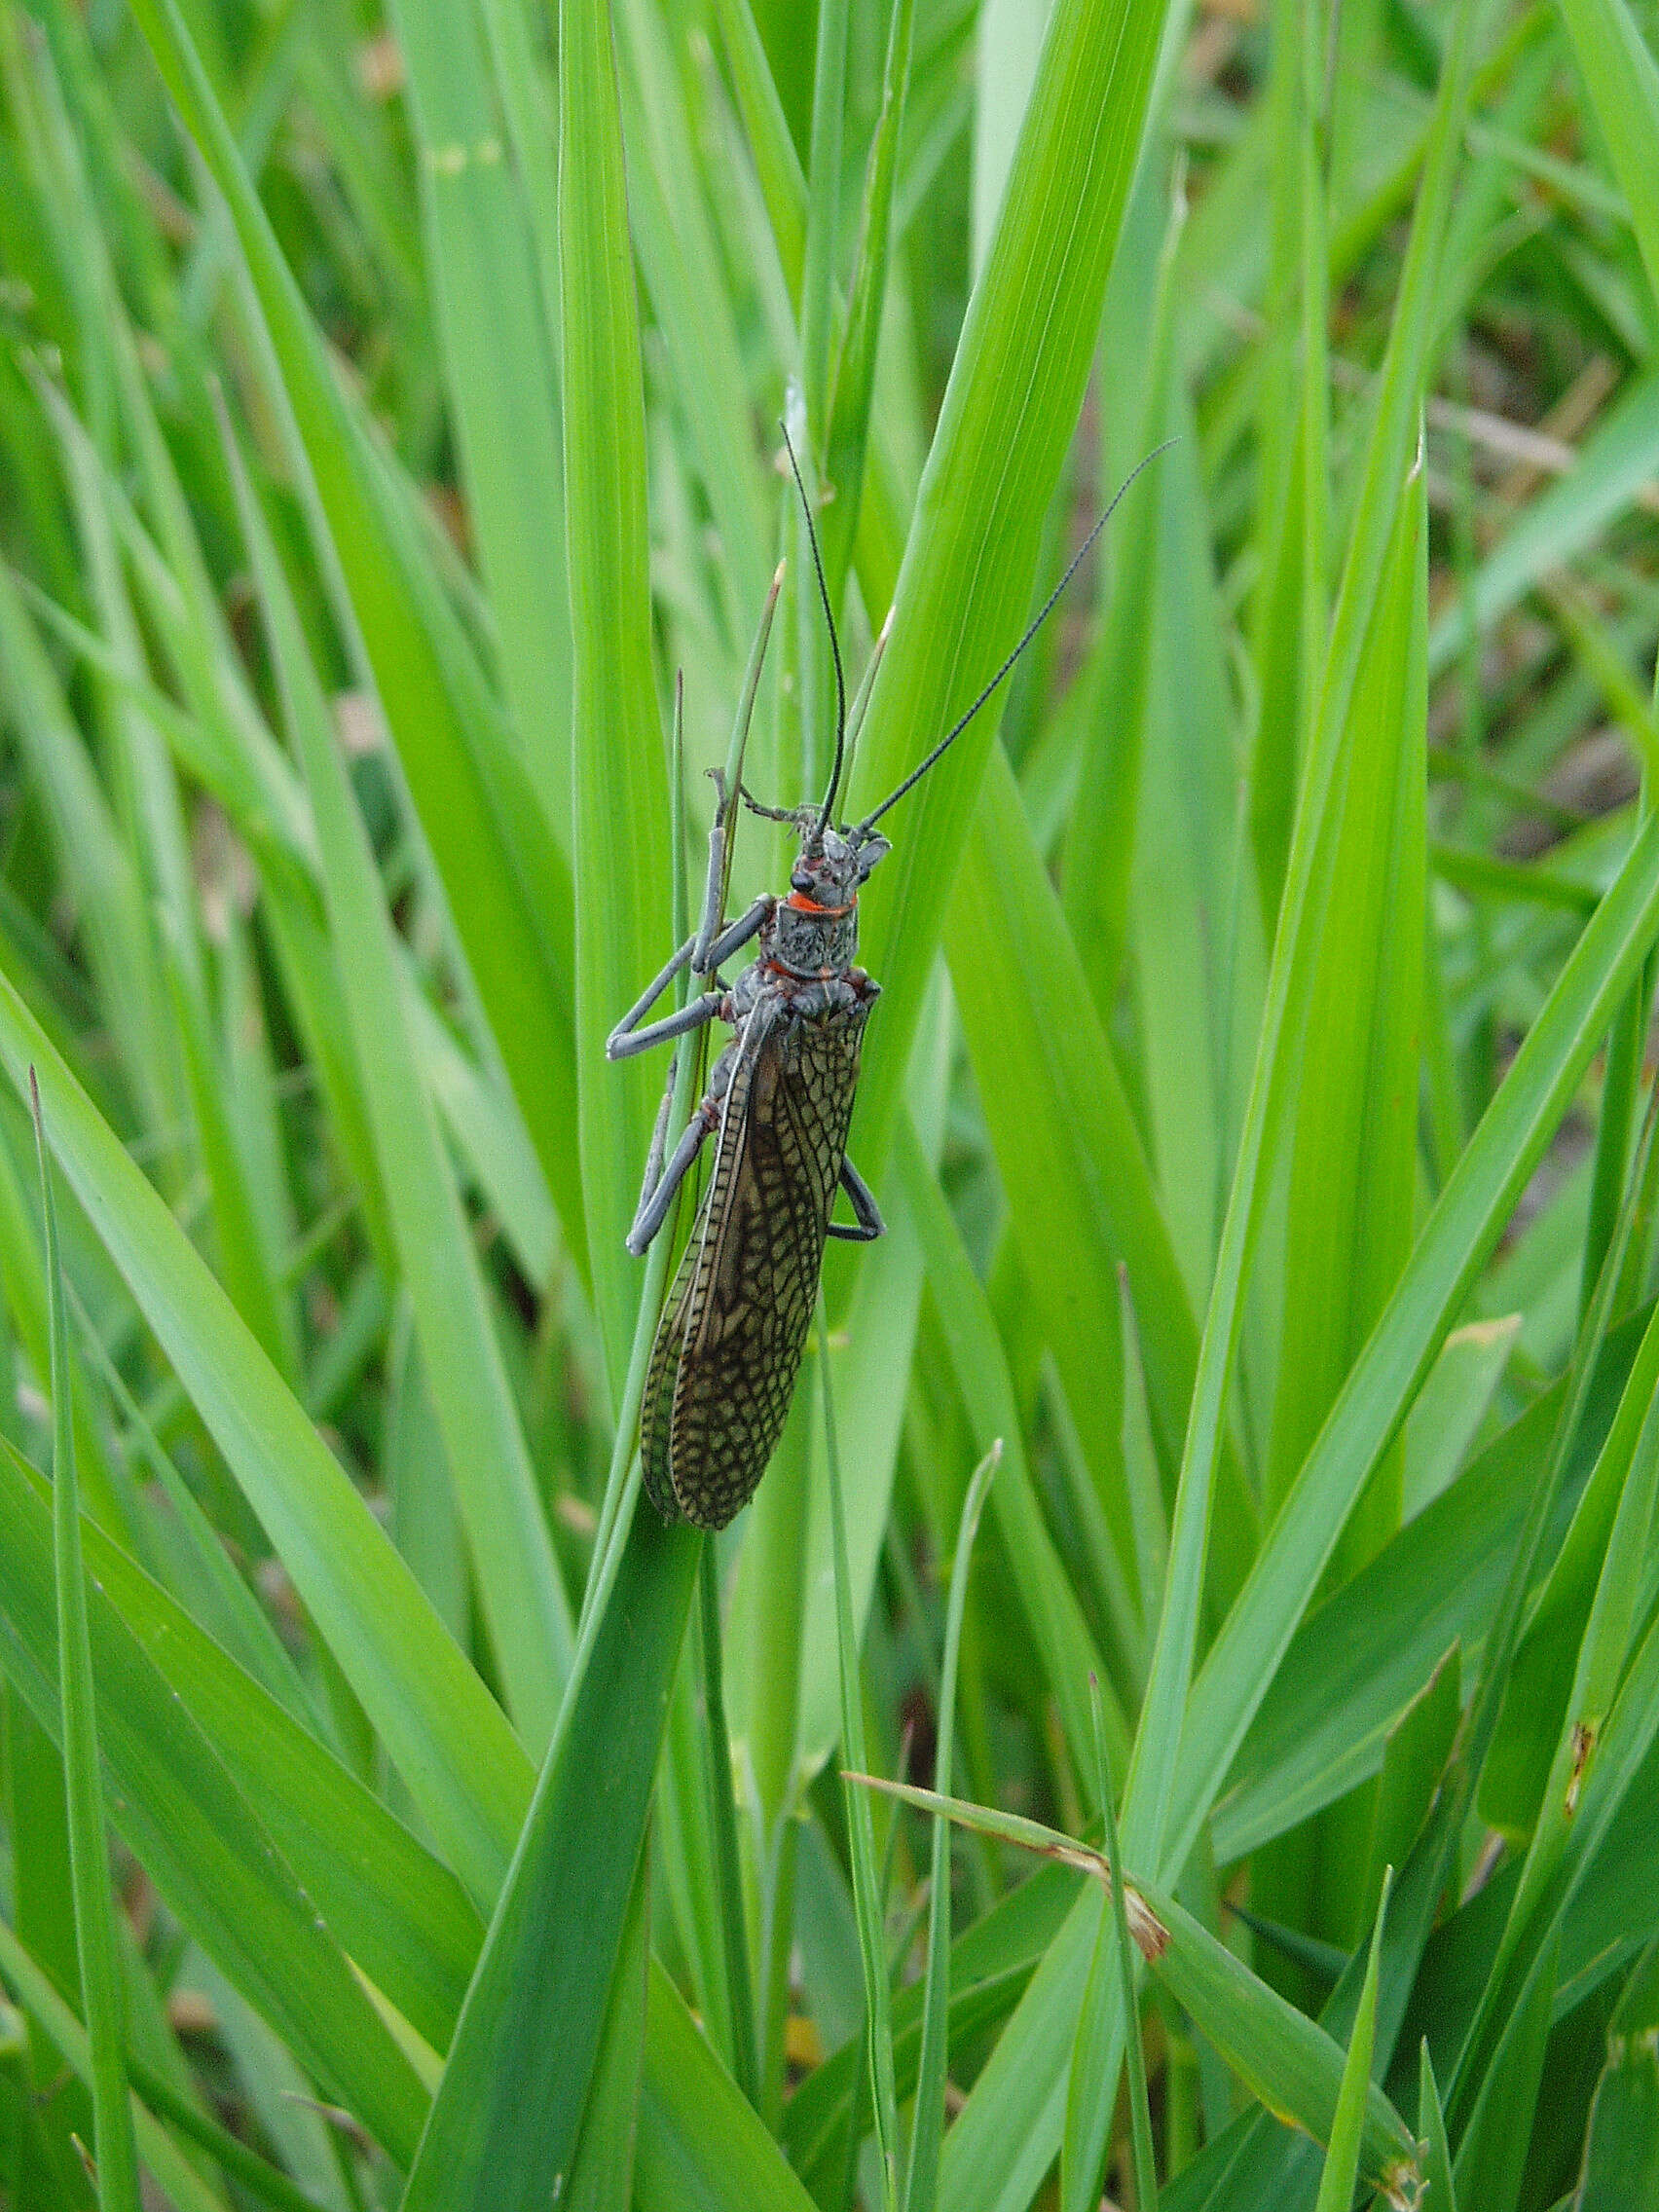 Image of stoneflies